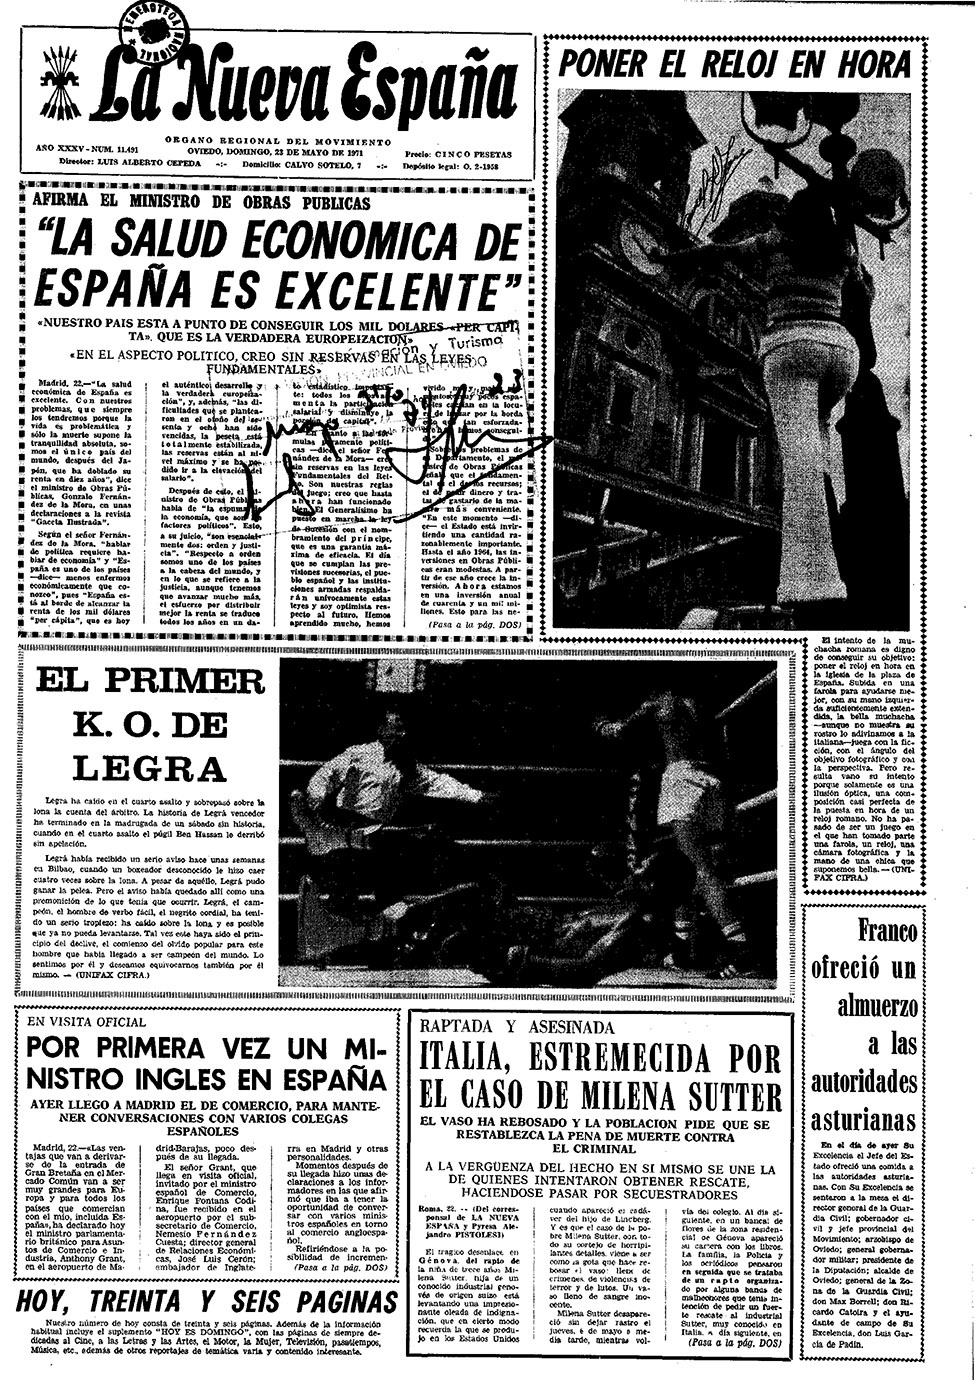 Portada del Domingo, 23 de Mayo de 1971